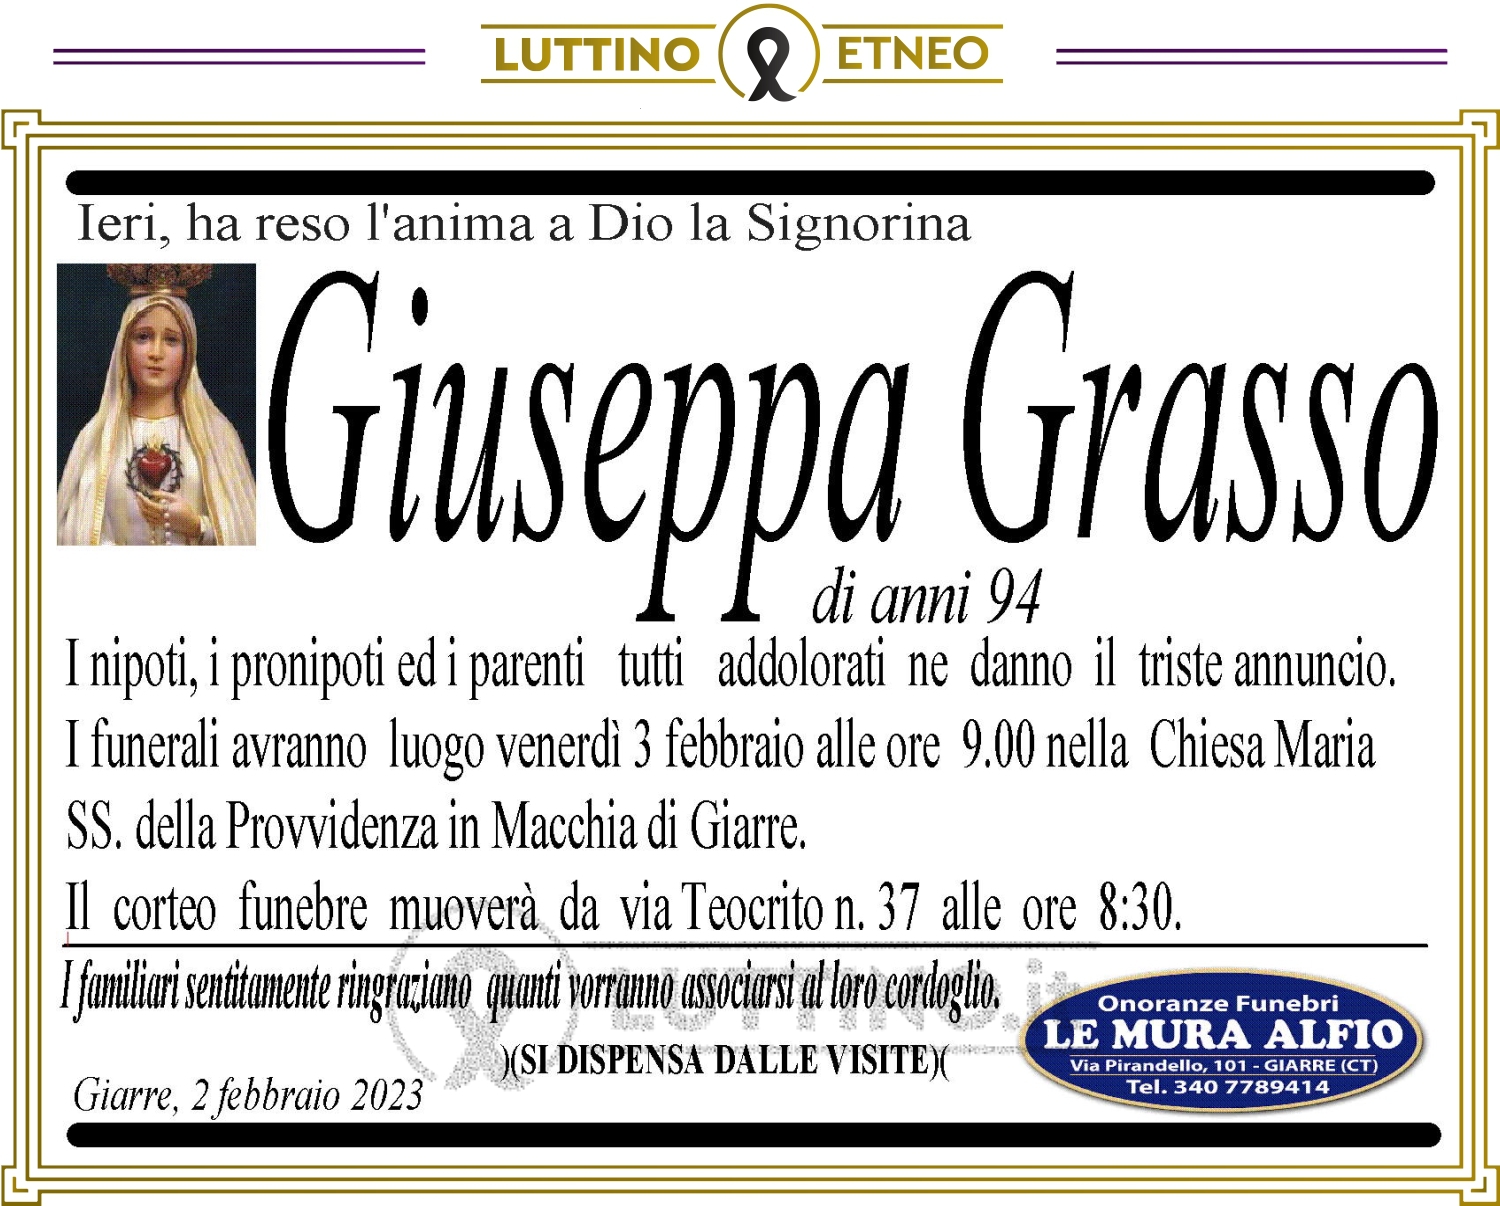 Giuseppa Grasso 